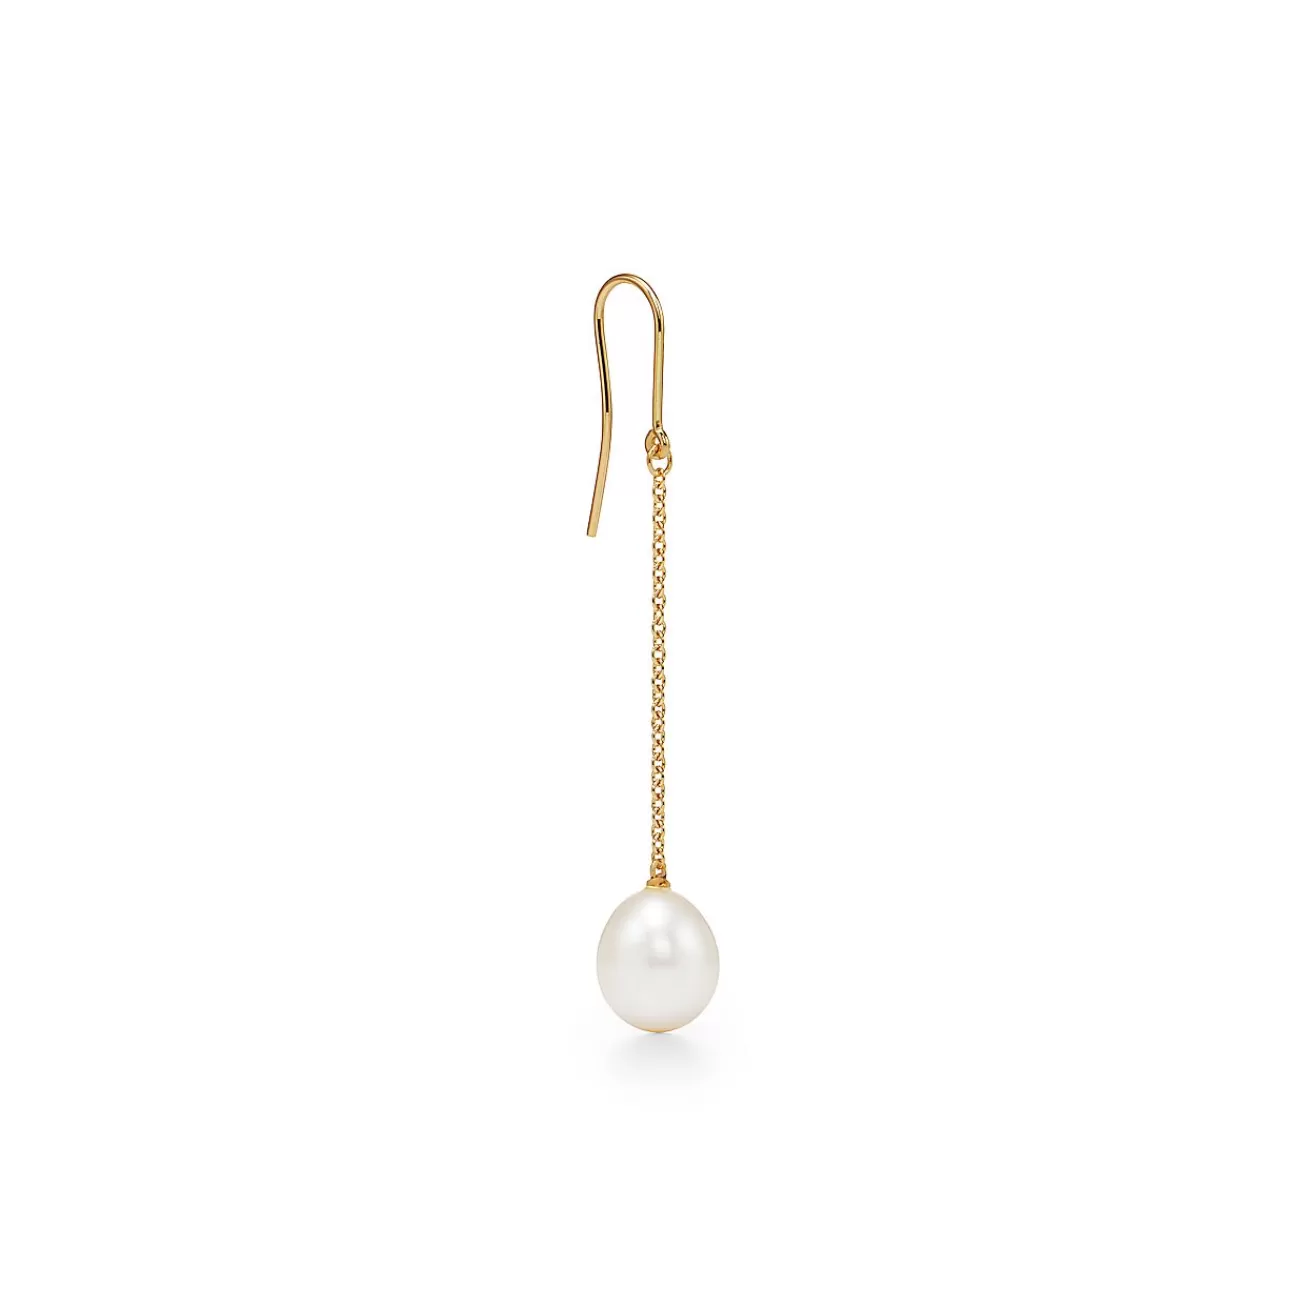 Tiffany & Co. Elsa Peretti® Pearls by the Yard™ chain earrings in 18k gold. | ^ Earrings | Most Popular Jewelry